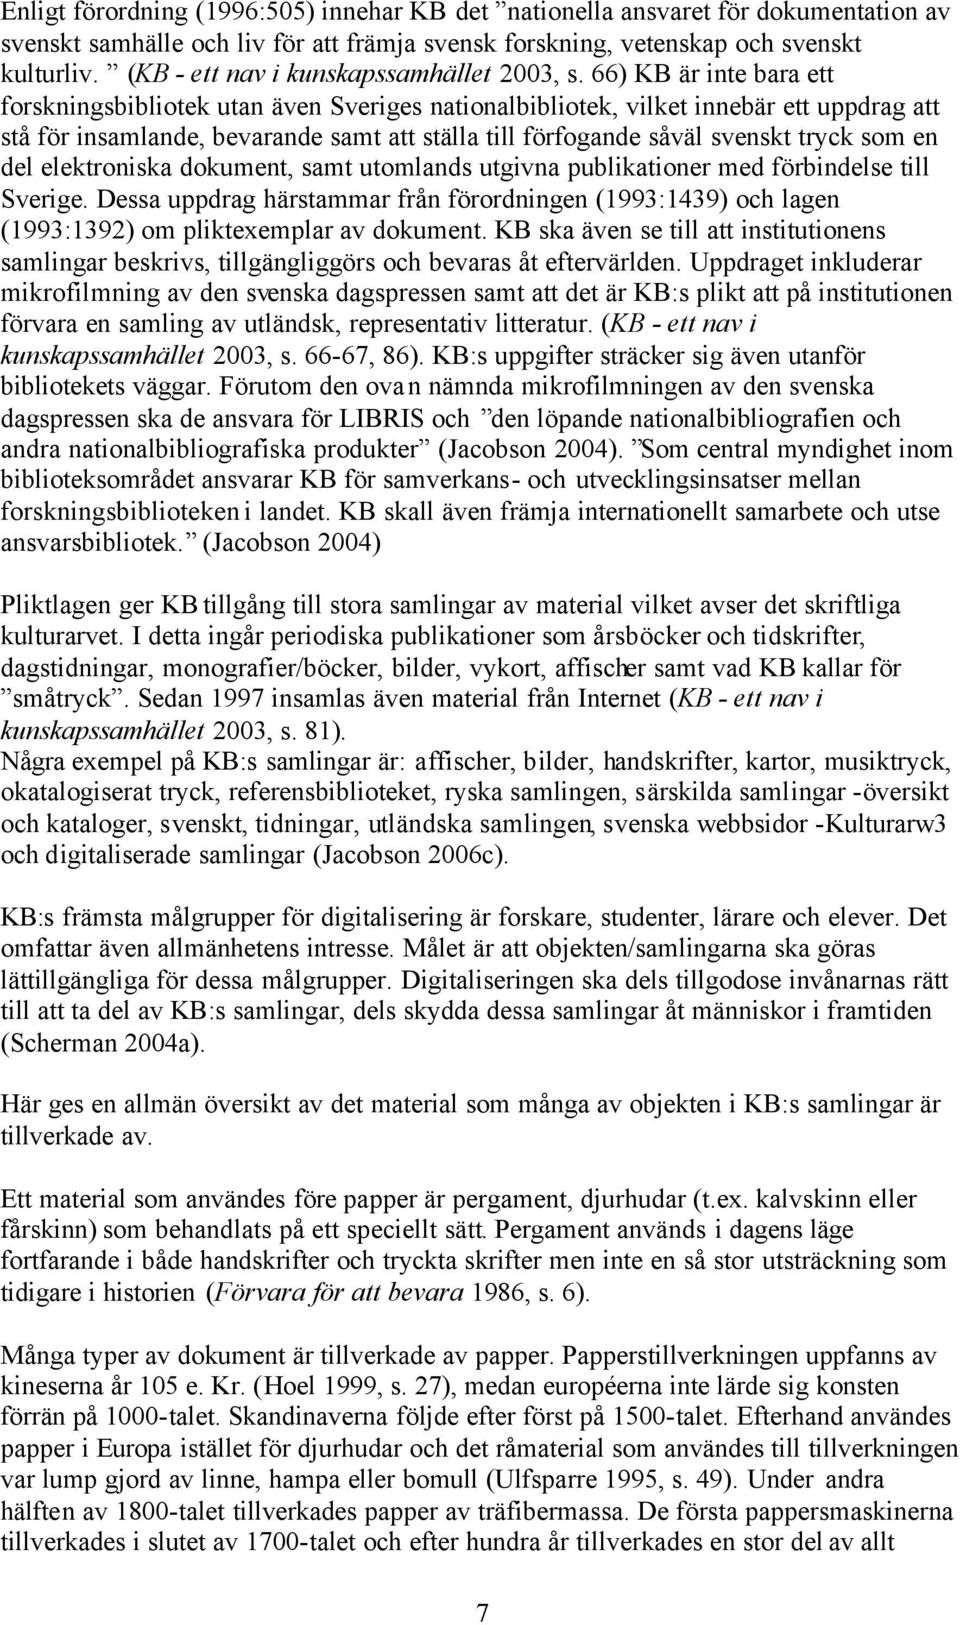 66) KB är inte bara ett forskningsbibliotek utan även Sveriges nationalbibliotek, vilket innebär ett uppdrag att stå för insamlande, bevarande samt att ställa till förfogande såväl svenskt tryck som